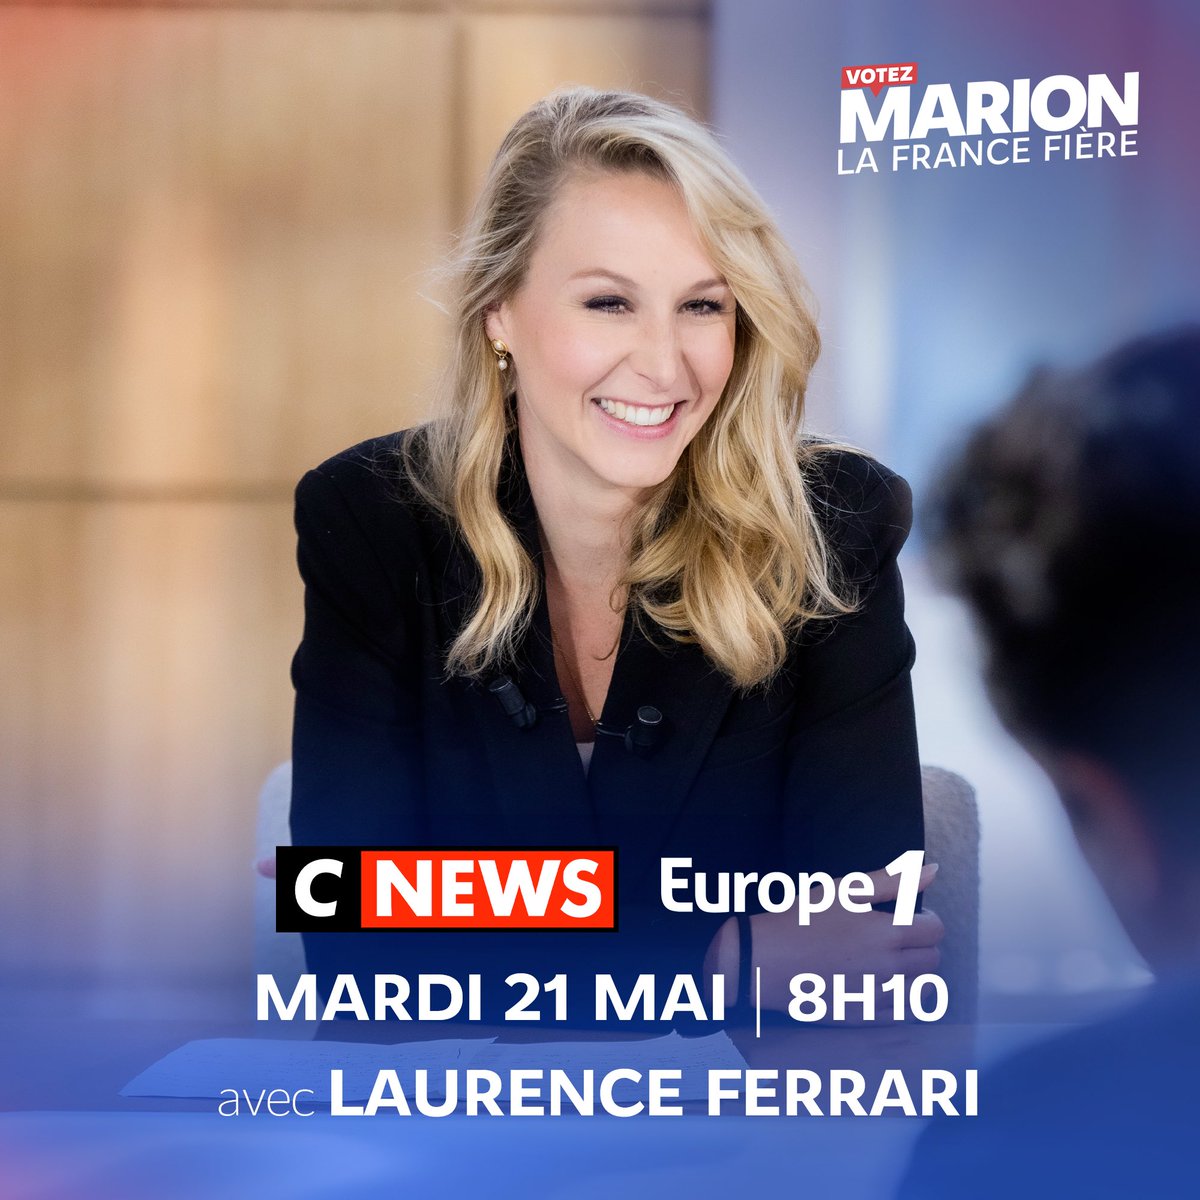 📺 Je vous donne rendez-vous ce mardi 21 mai à 8h10 sur CNEWS et Europe 1 dans #LaGrandeITW de @LaurenceFerrari. À demain matin ! 👋🏼